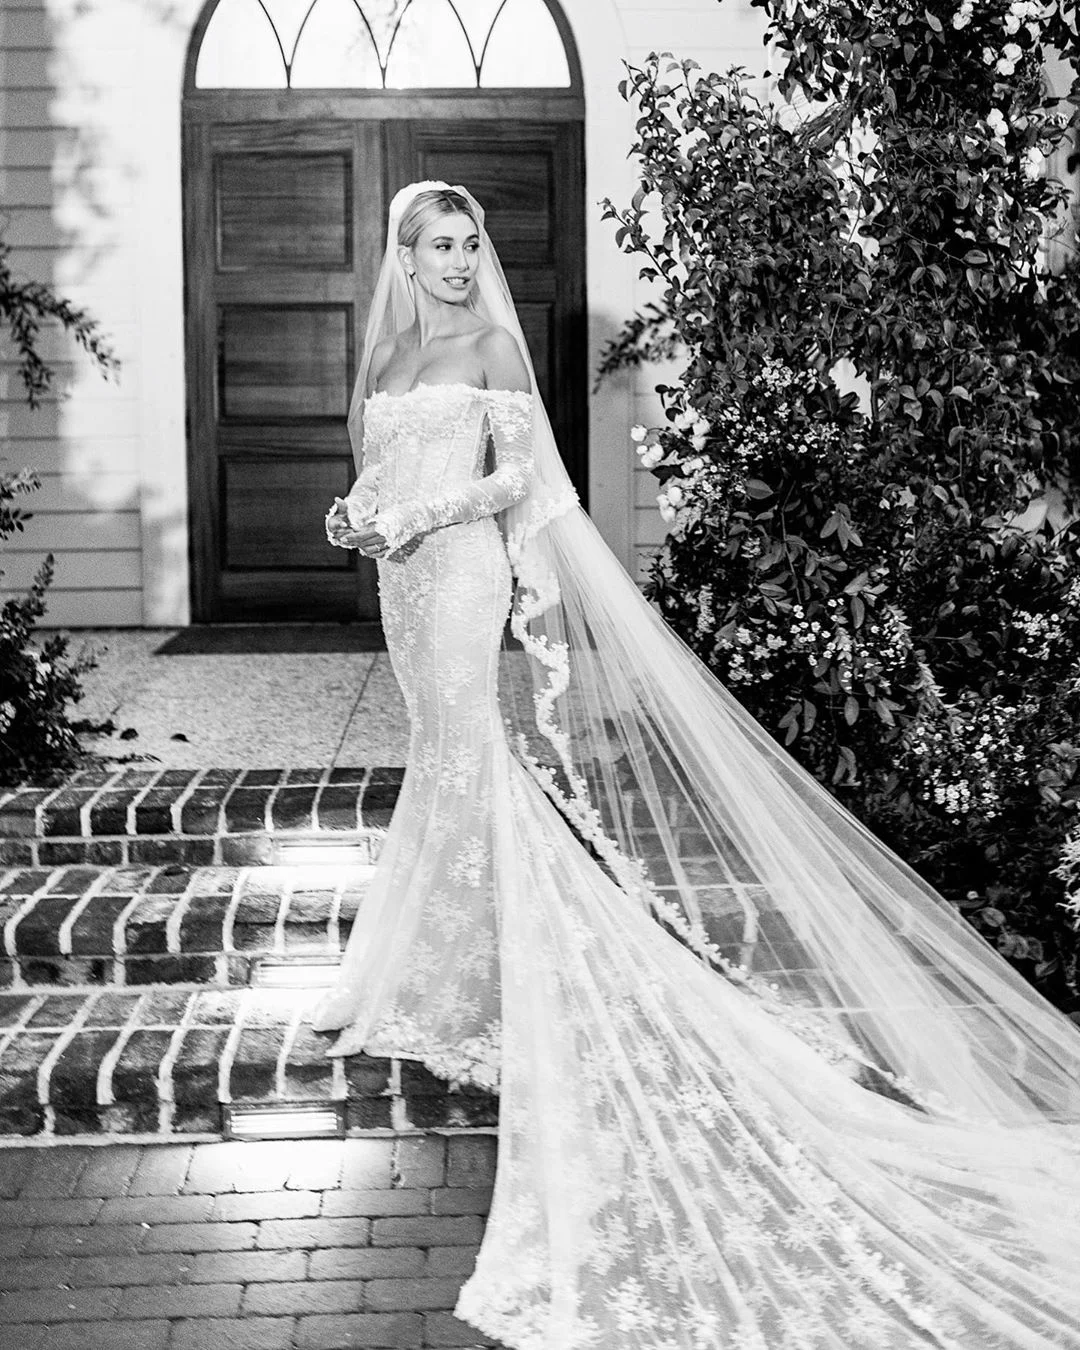 Хейли Бибер поделилась фото со свадьбы, на которых можно увидеть ее роскошное платье - фото 453222